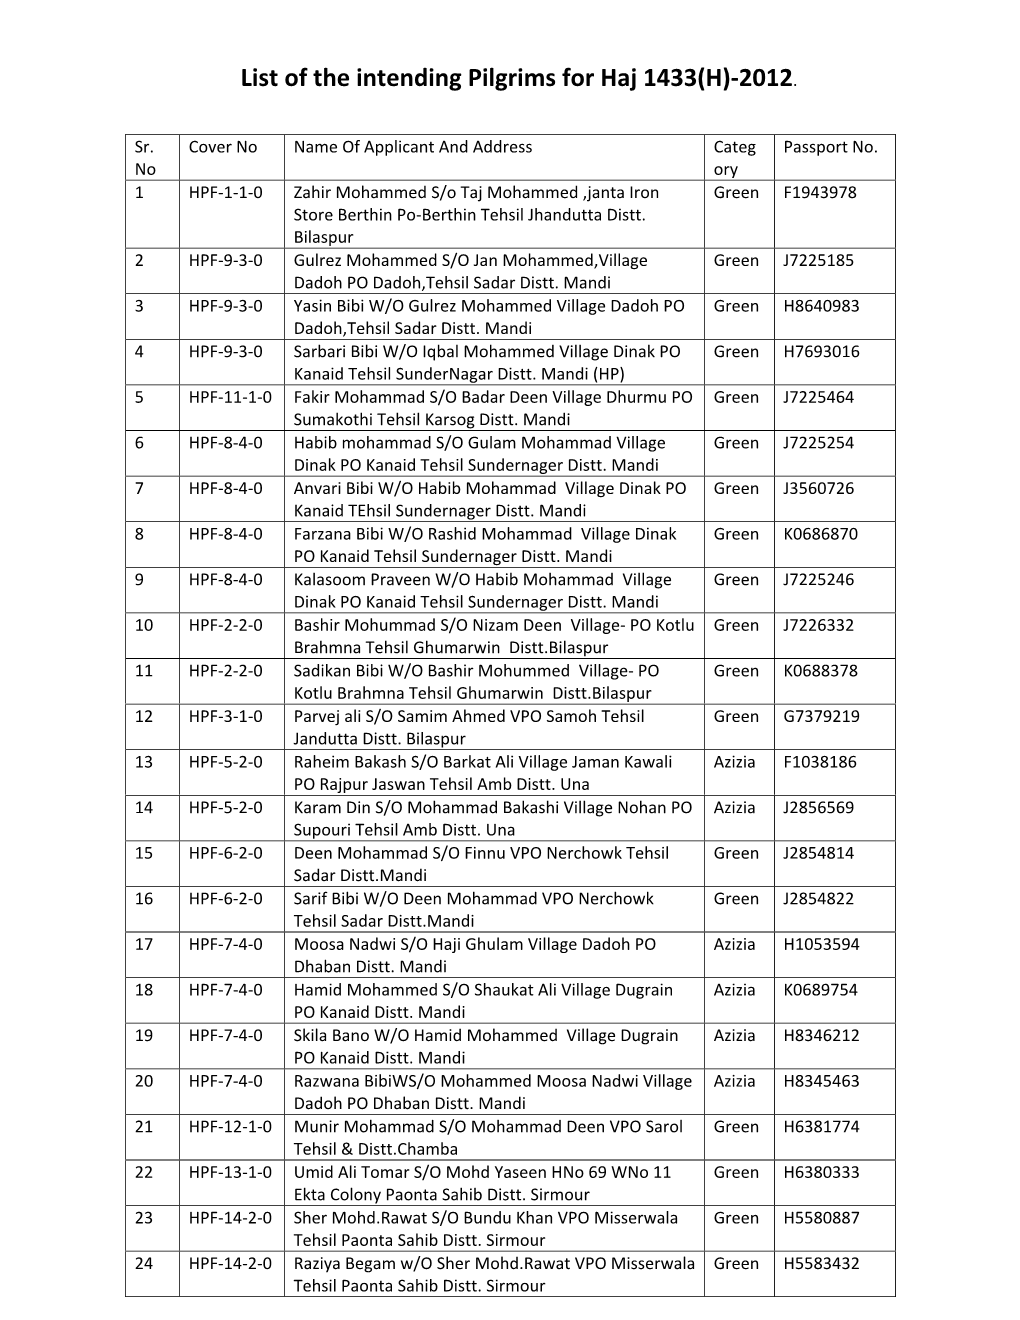 List of the Intending Pilgrims for Haj 1433(H)-2012